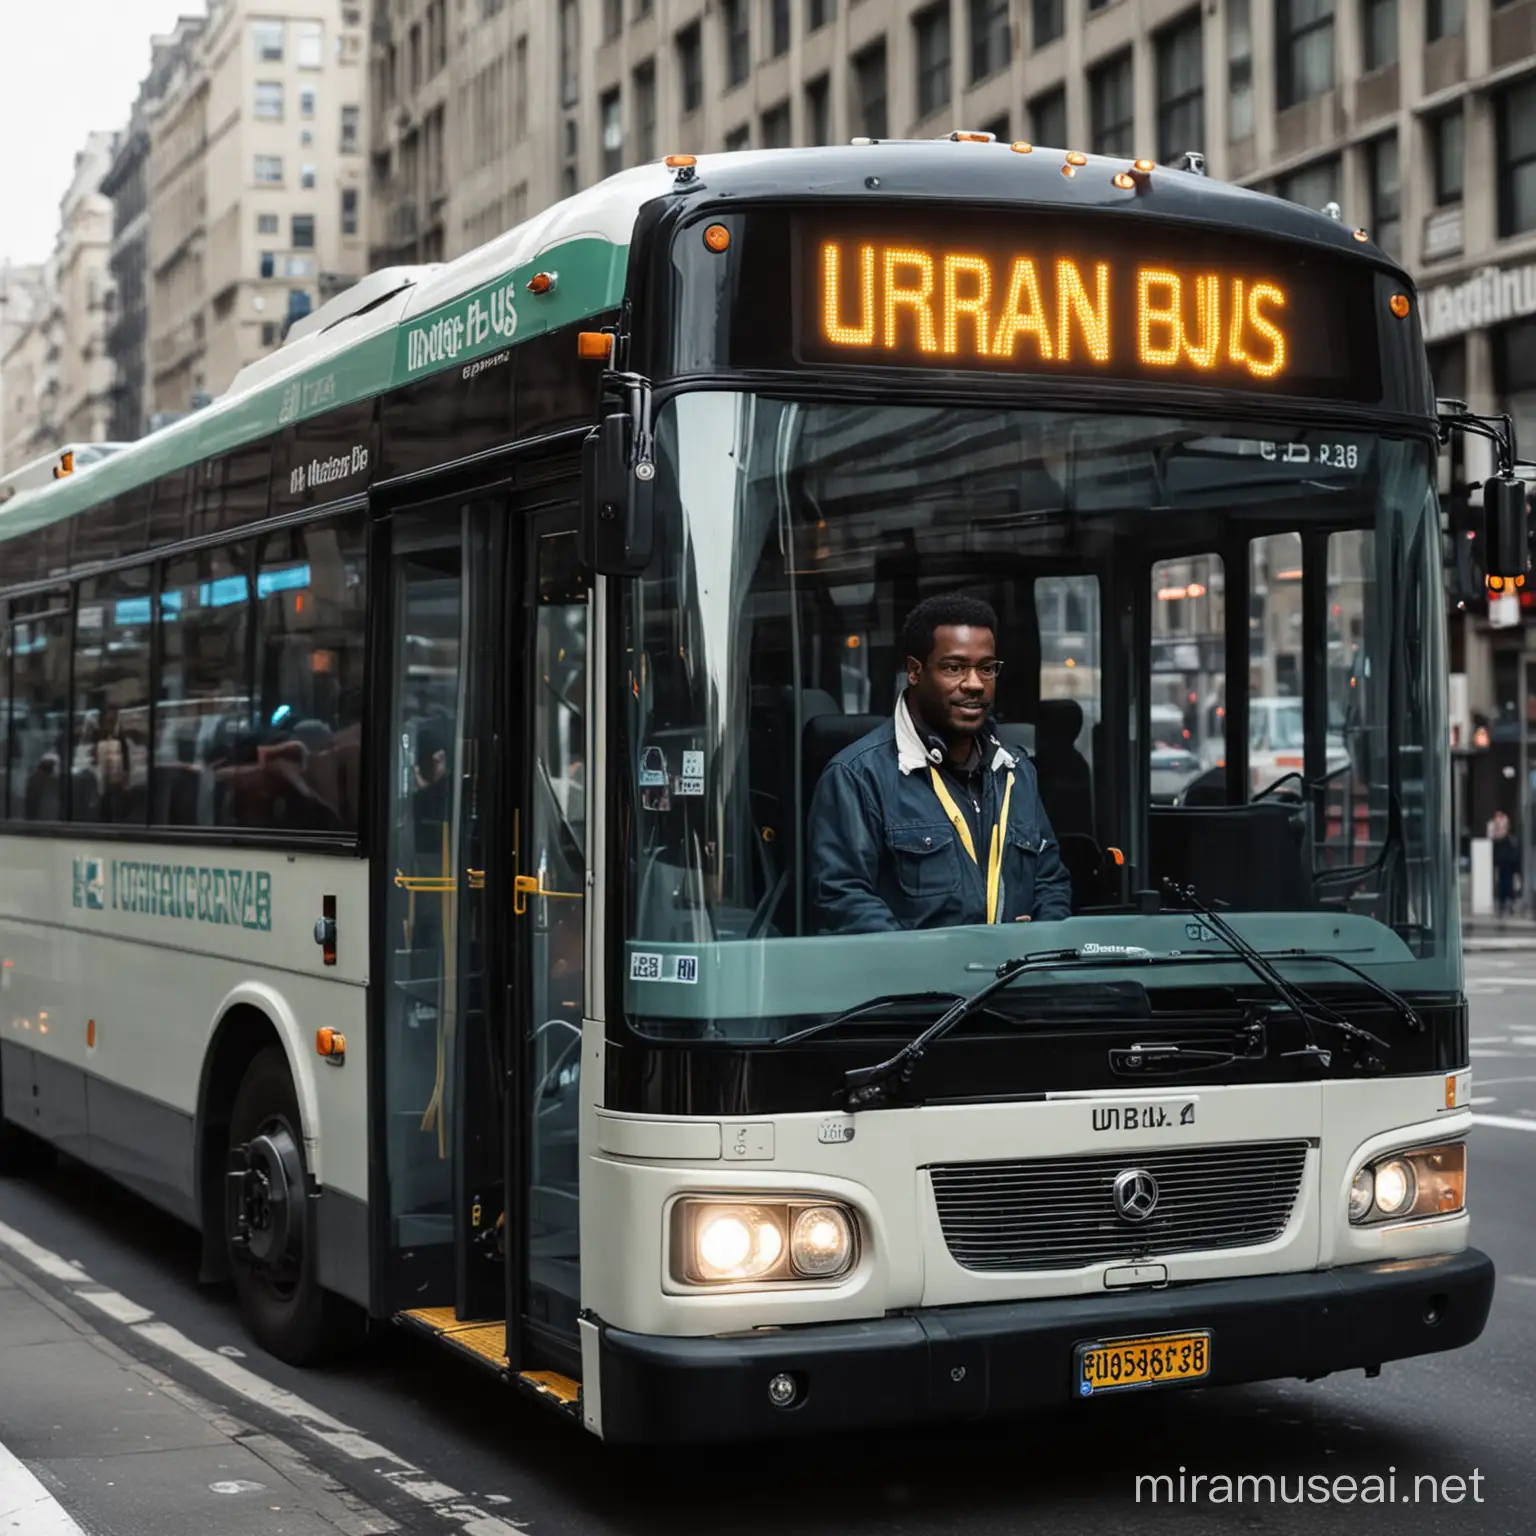 

Urban Bus driver
